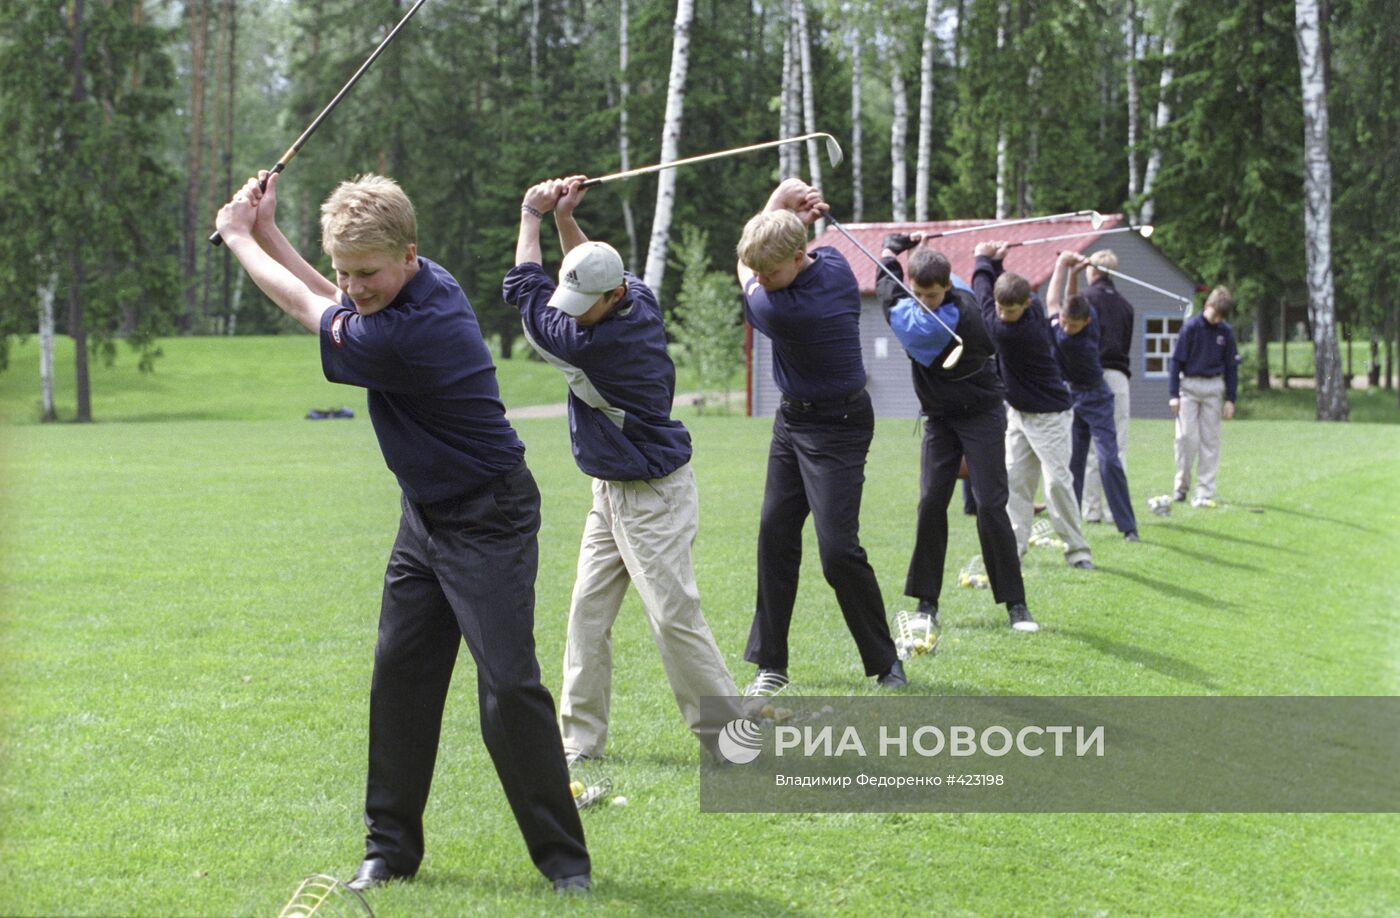 Члены юниорской академии гольфа